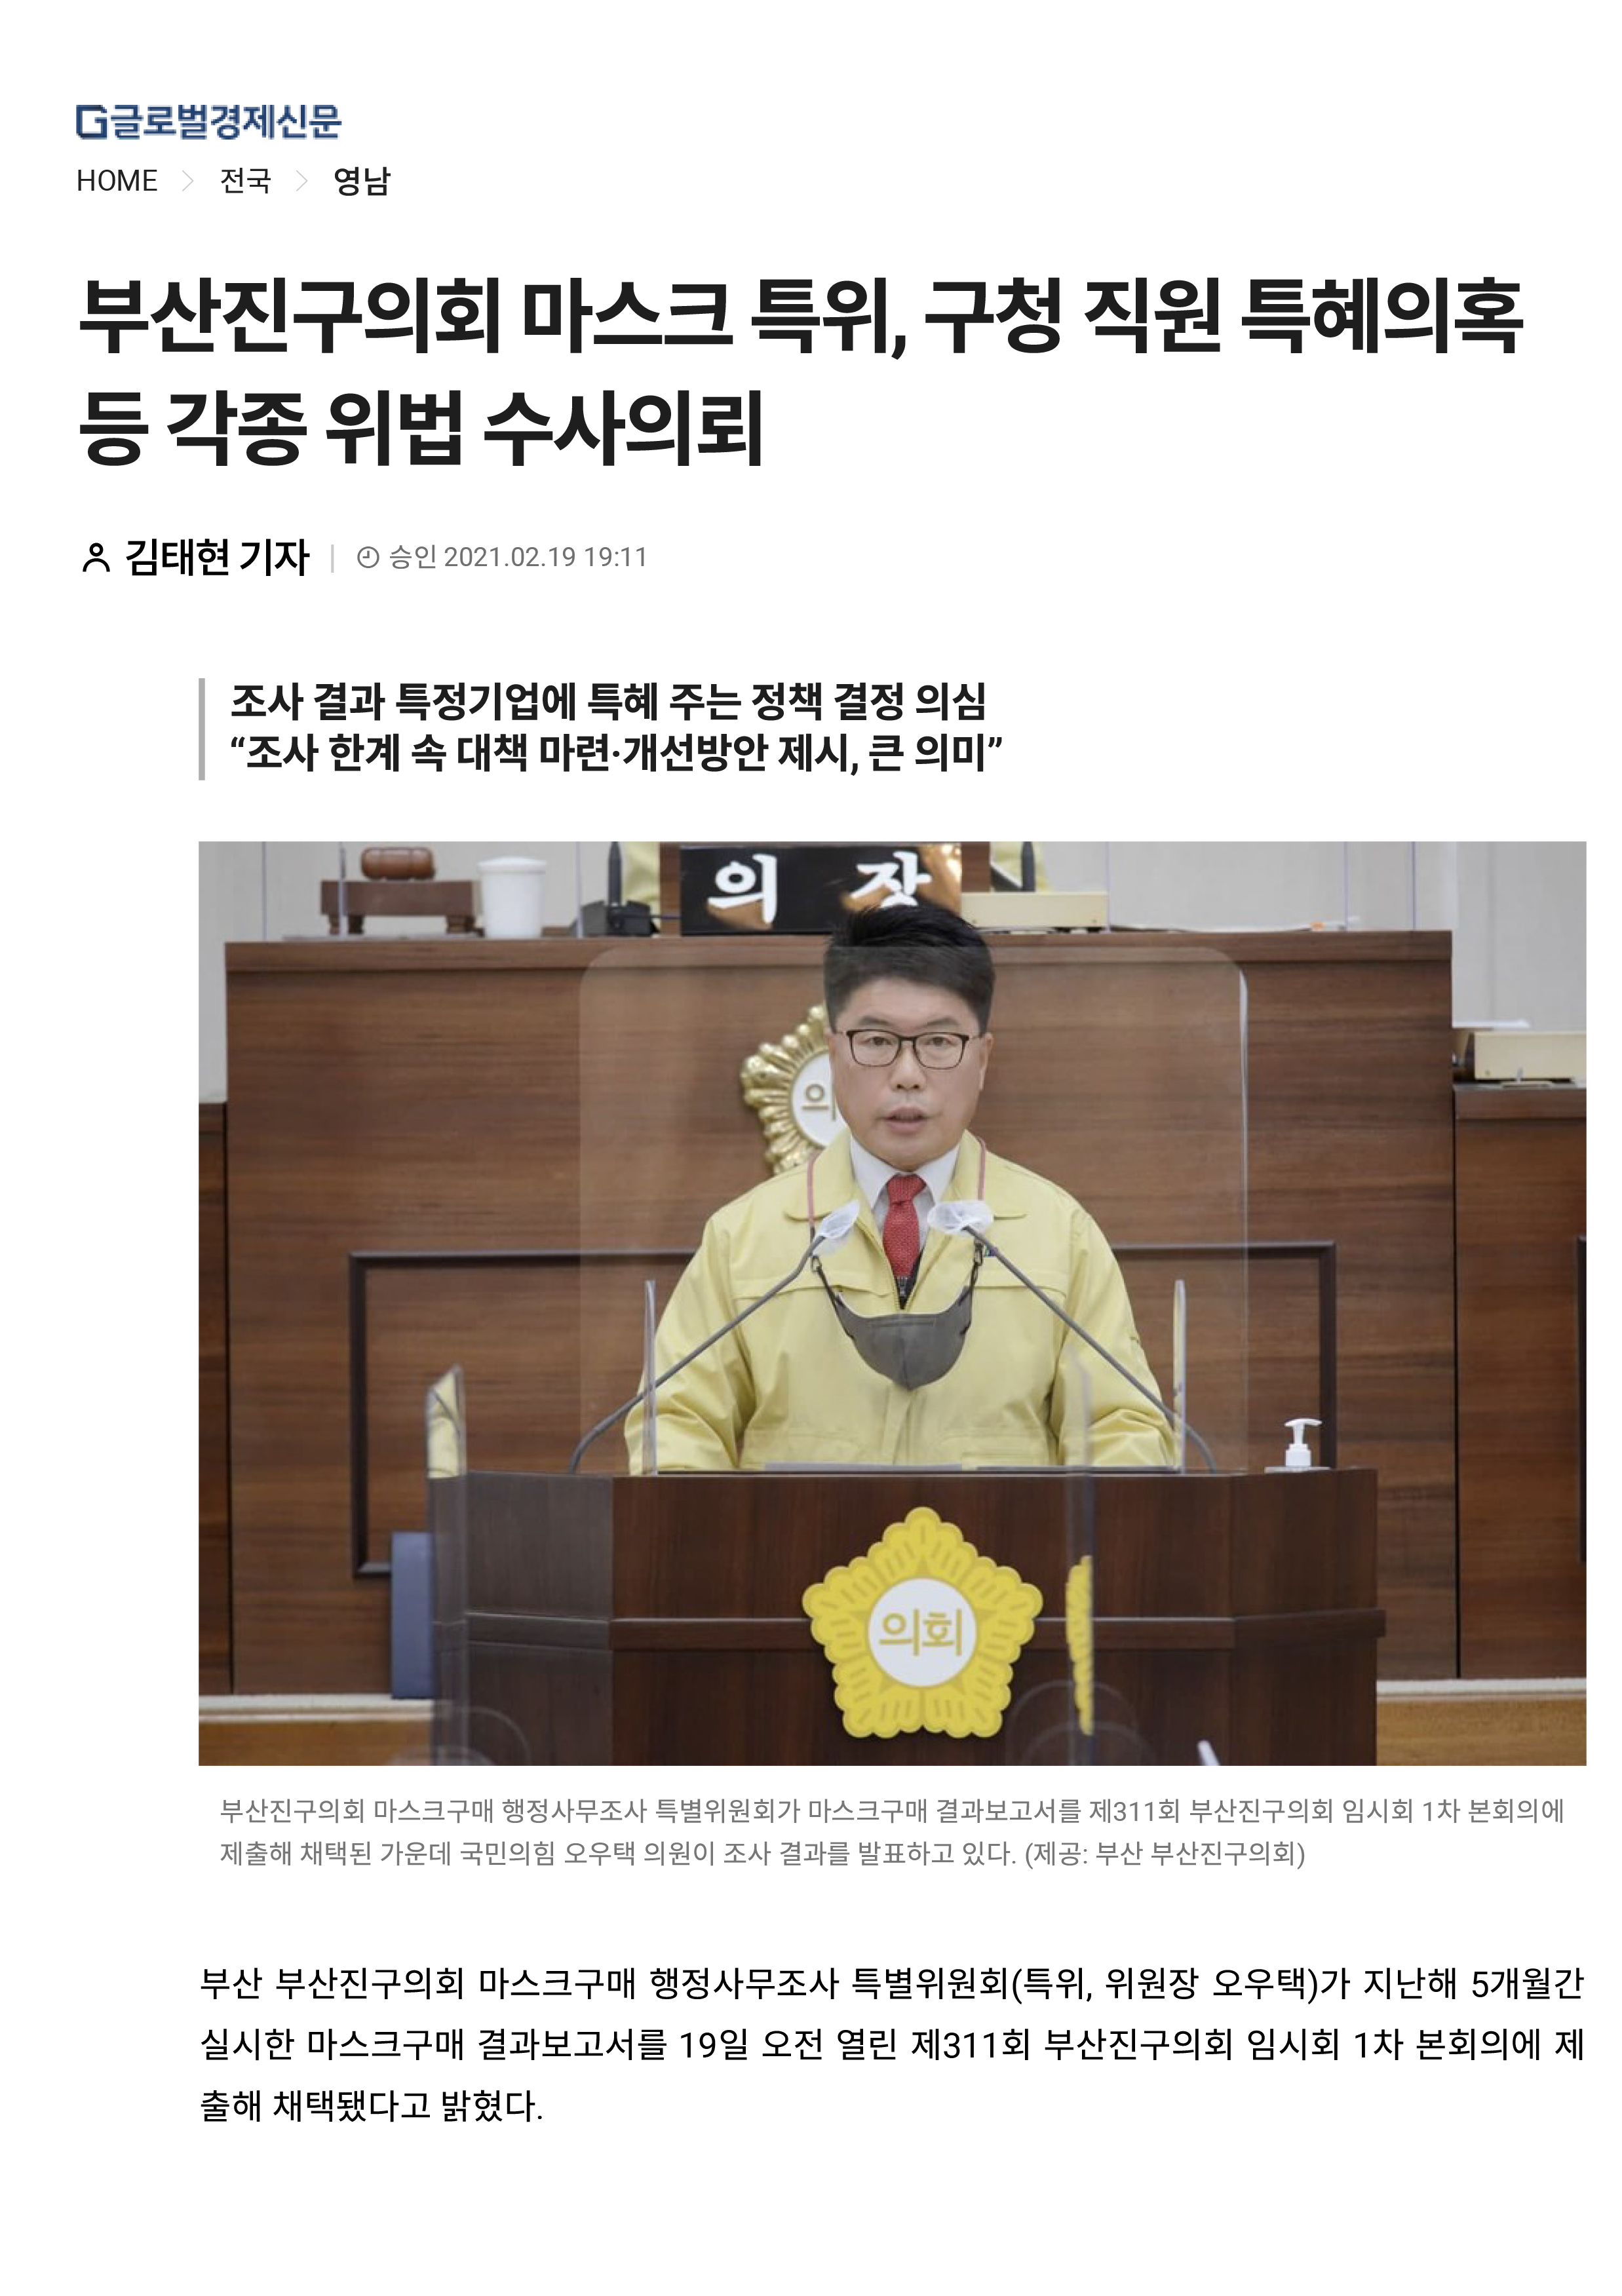 마스크구매행정사무조사특별위원회 관련 뉴스 모음